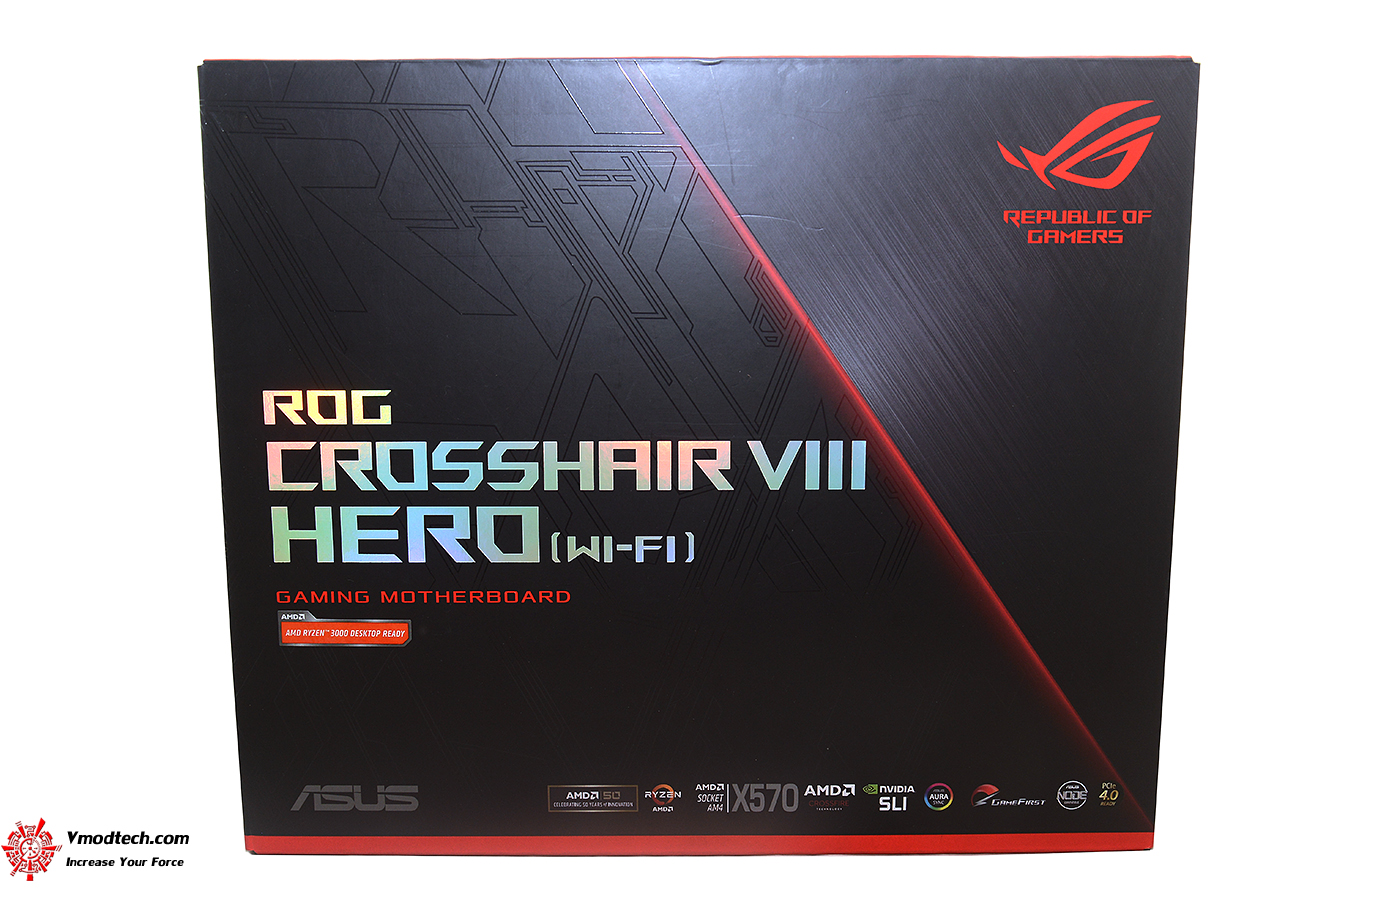 dsc 6272 ASUS ROG Crosshair VIII Hero (WI FI) Review